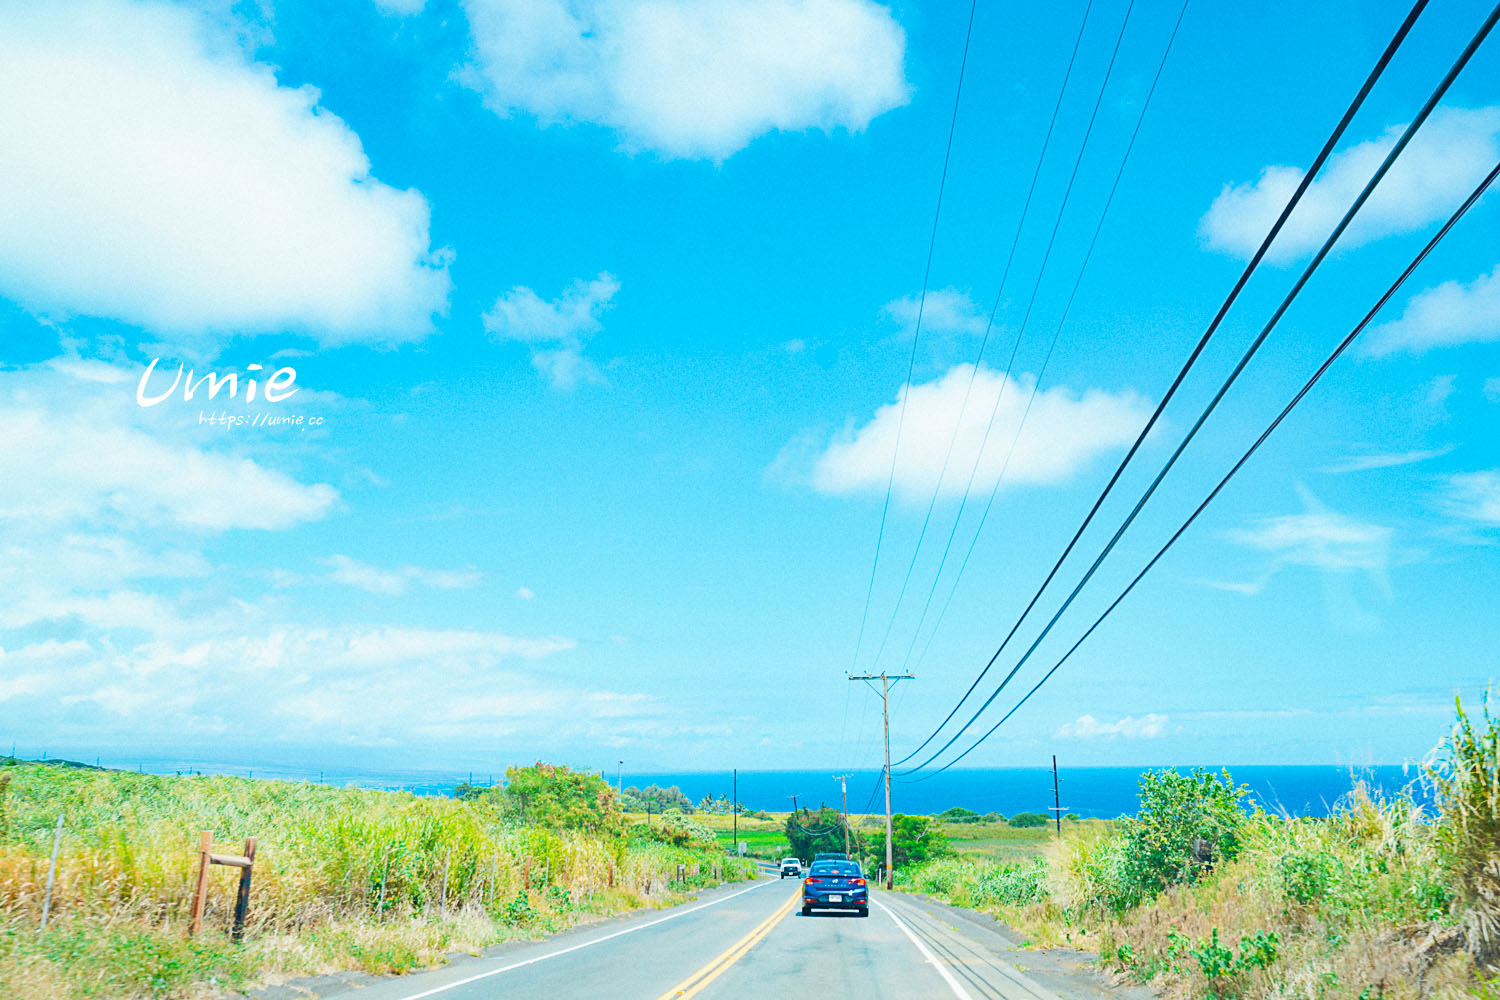 夏威夷自駕旅行|租了敞篷跑車、吉普車!旅行中屬於我們的帥氣迷人景色! (可愛島|大島|茂宜|歐胡島跳島自駕行程分享!)